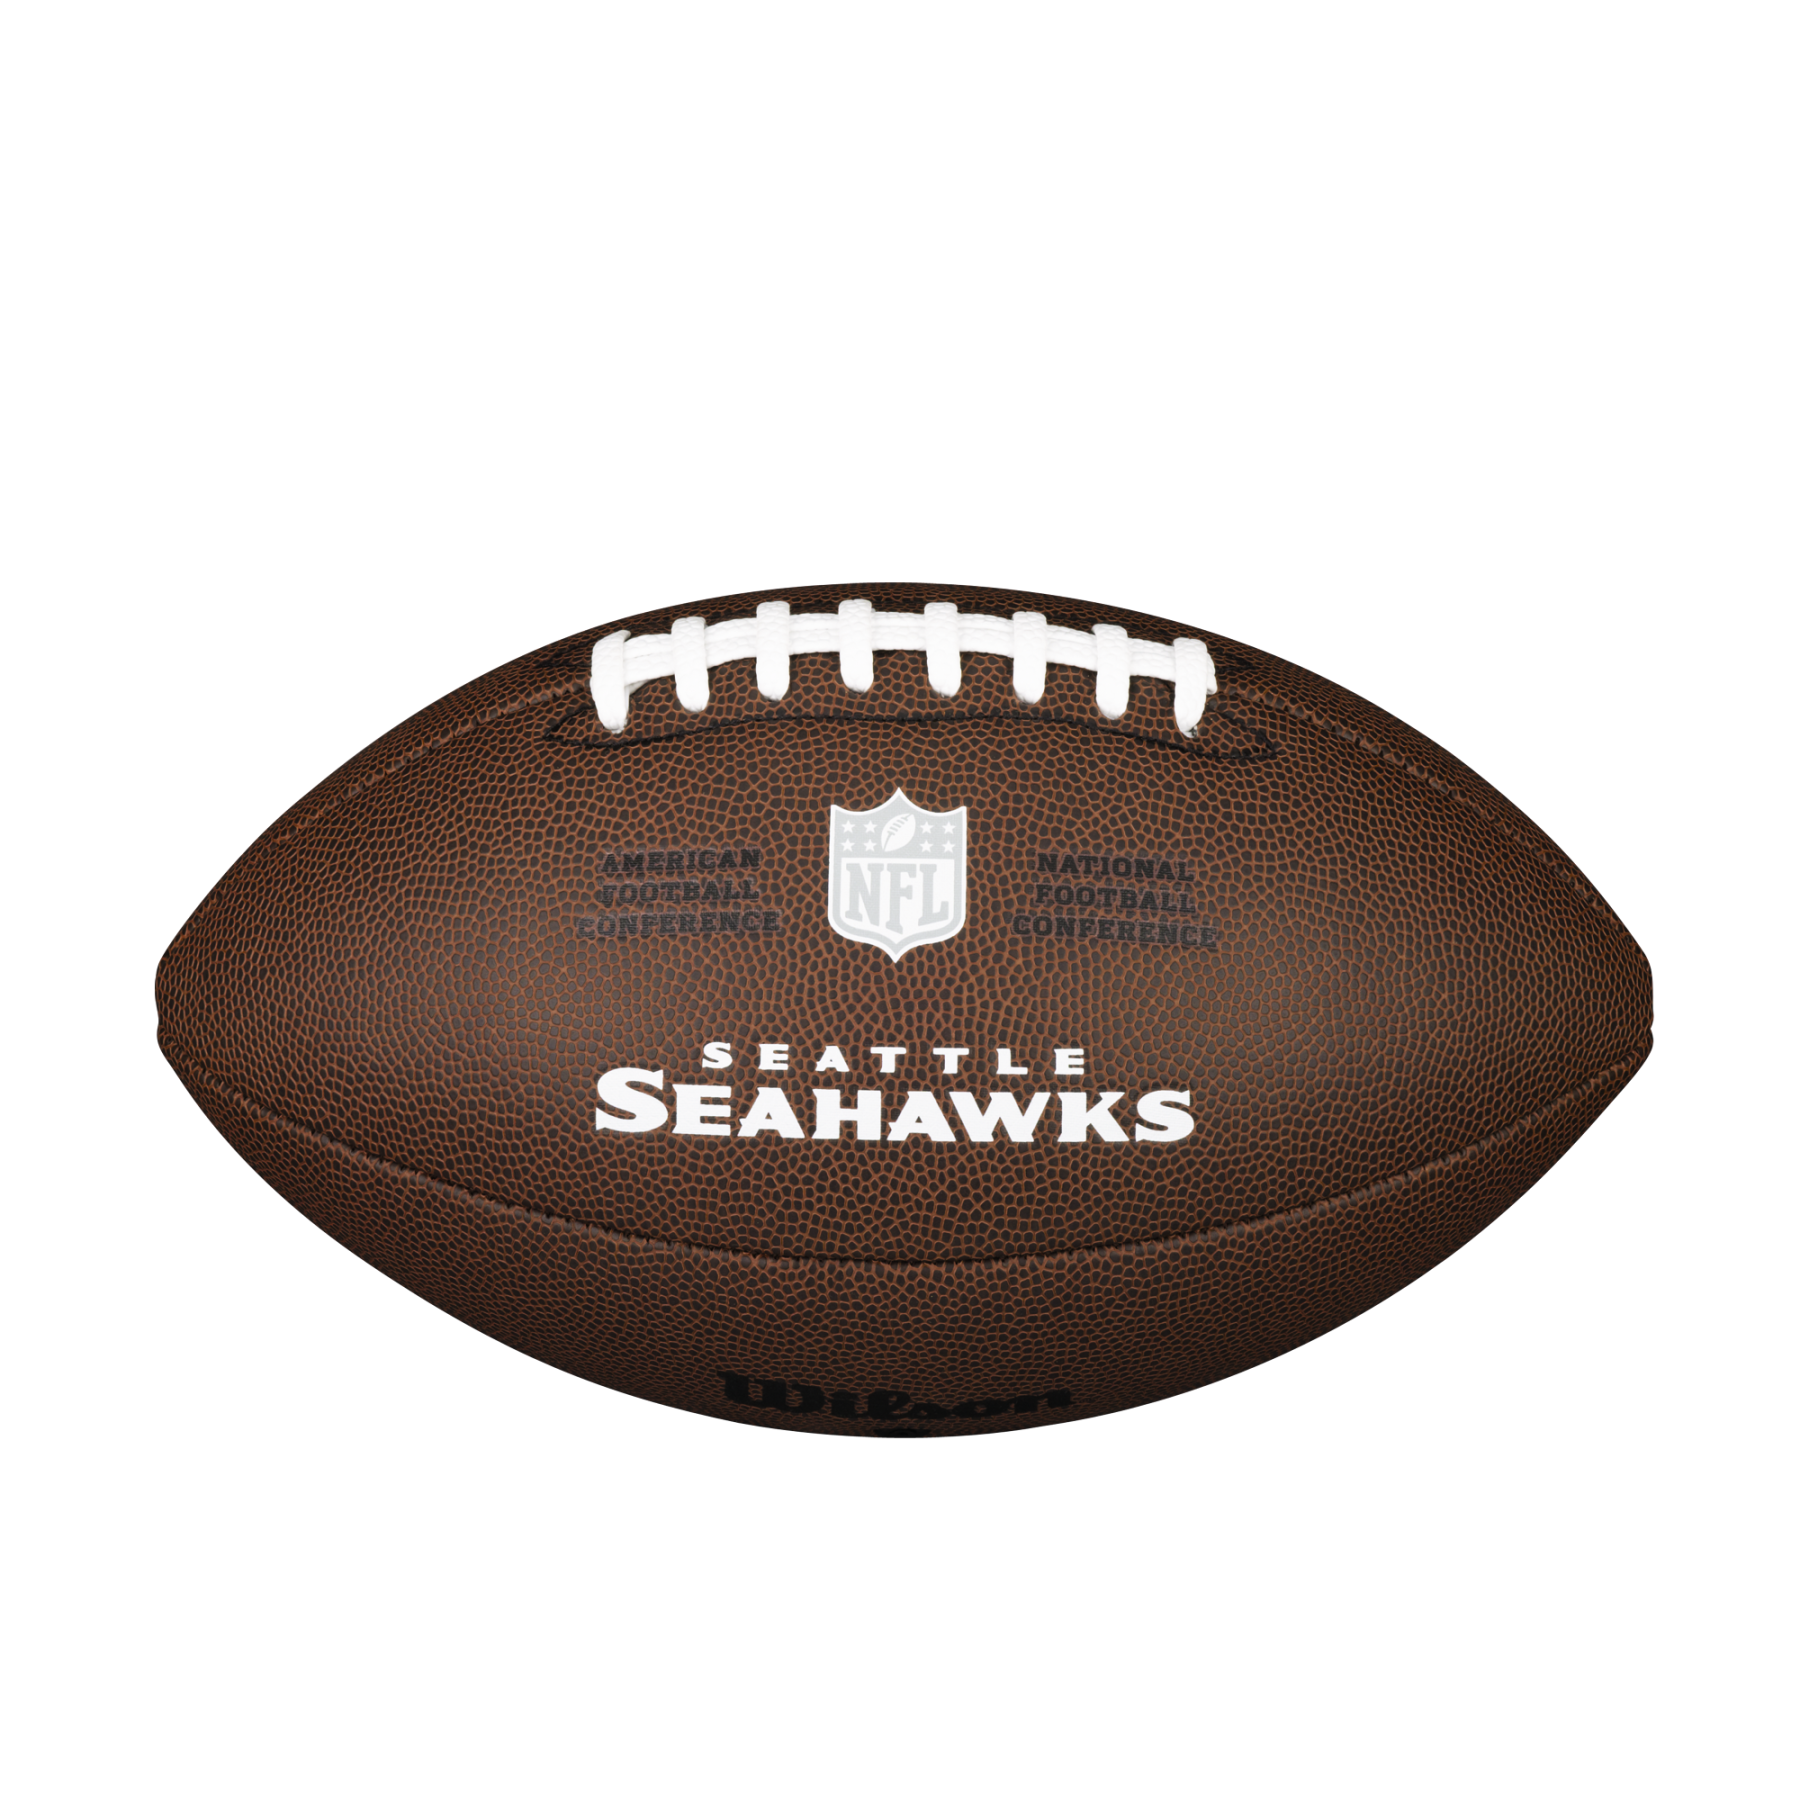 Bola Wilson Seahawks NFL com licença